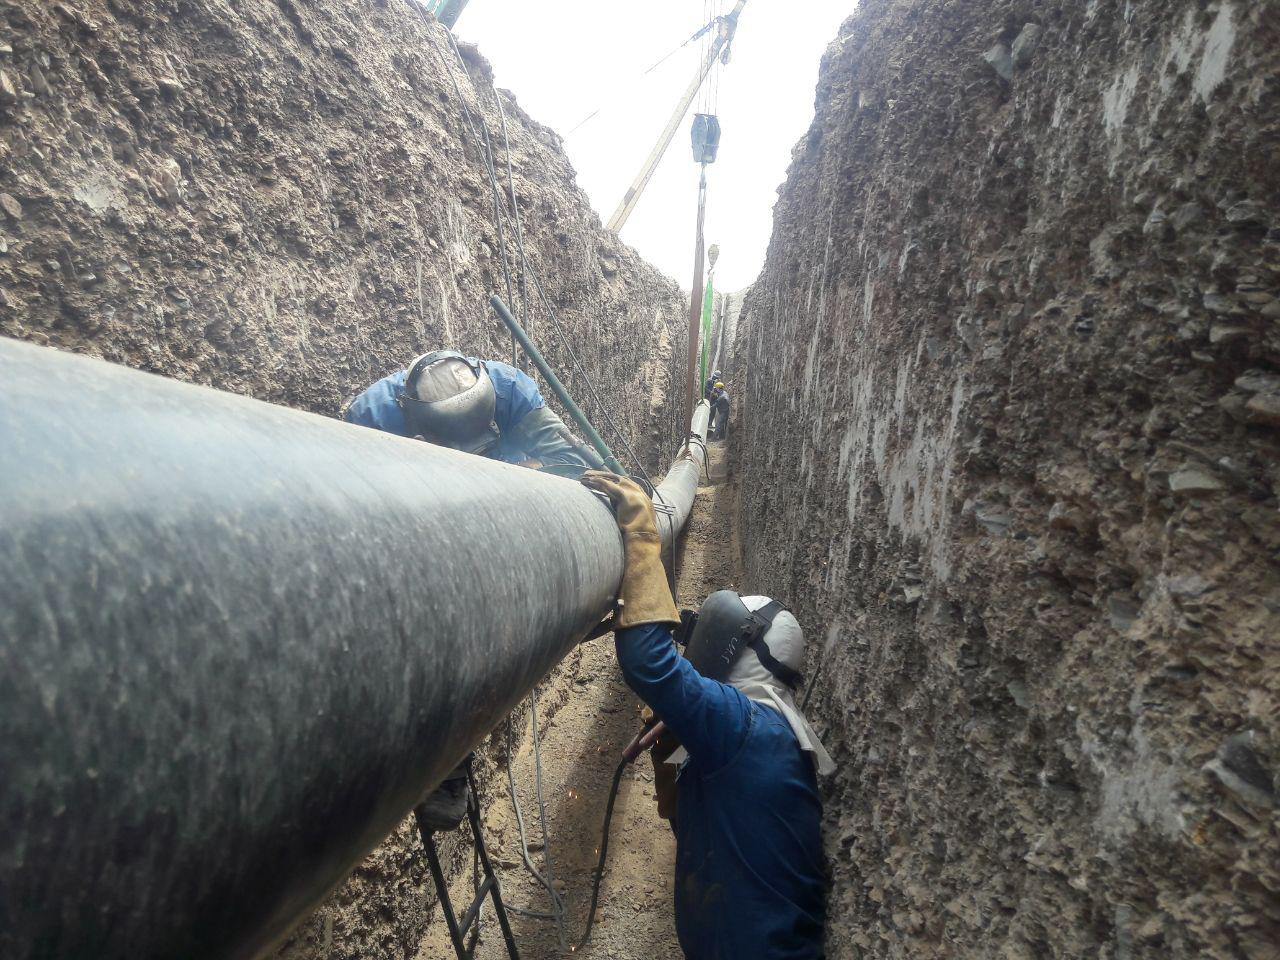 Sarbisheh - Nehbandan gas transmission pipeline